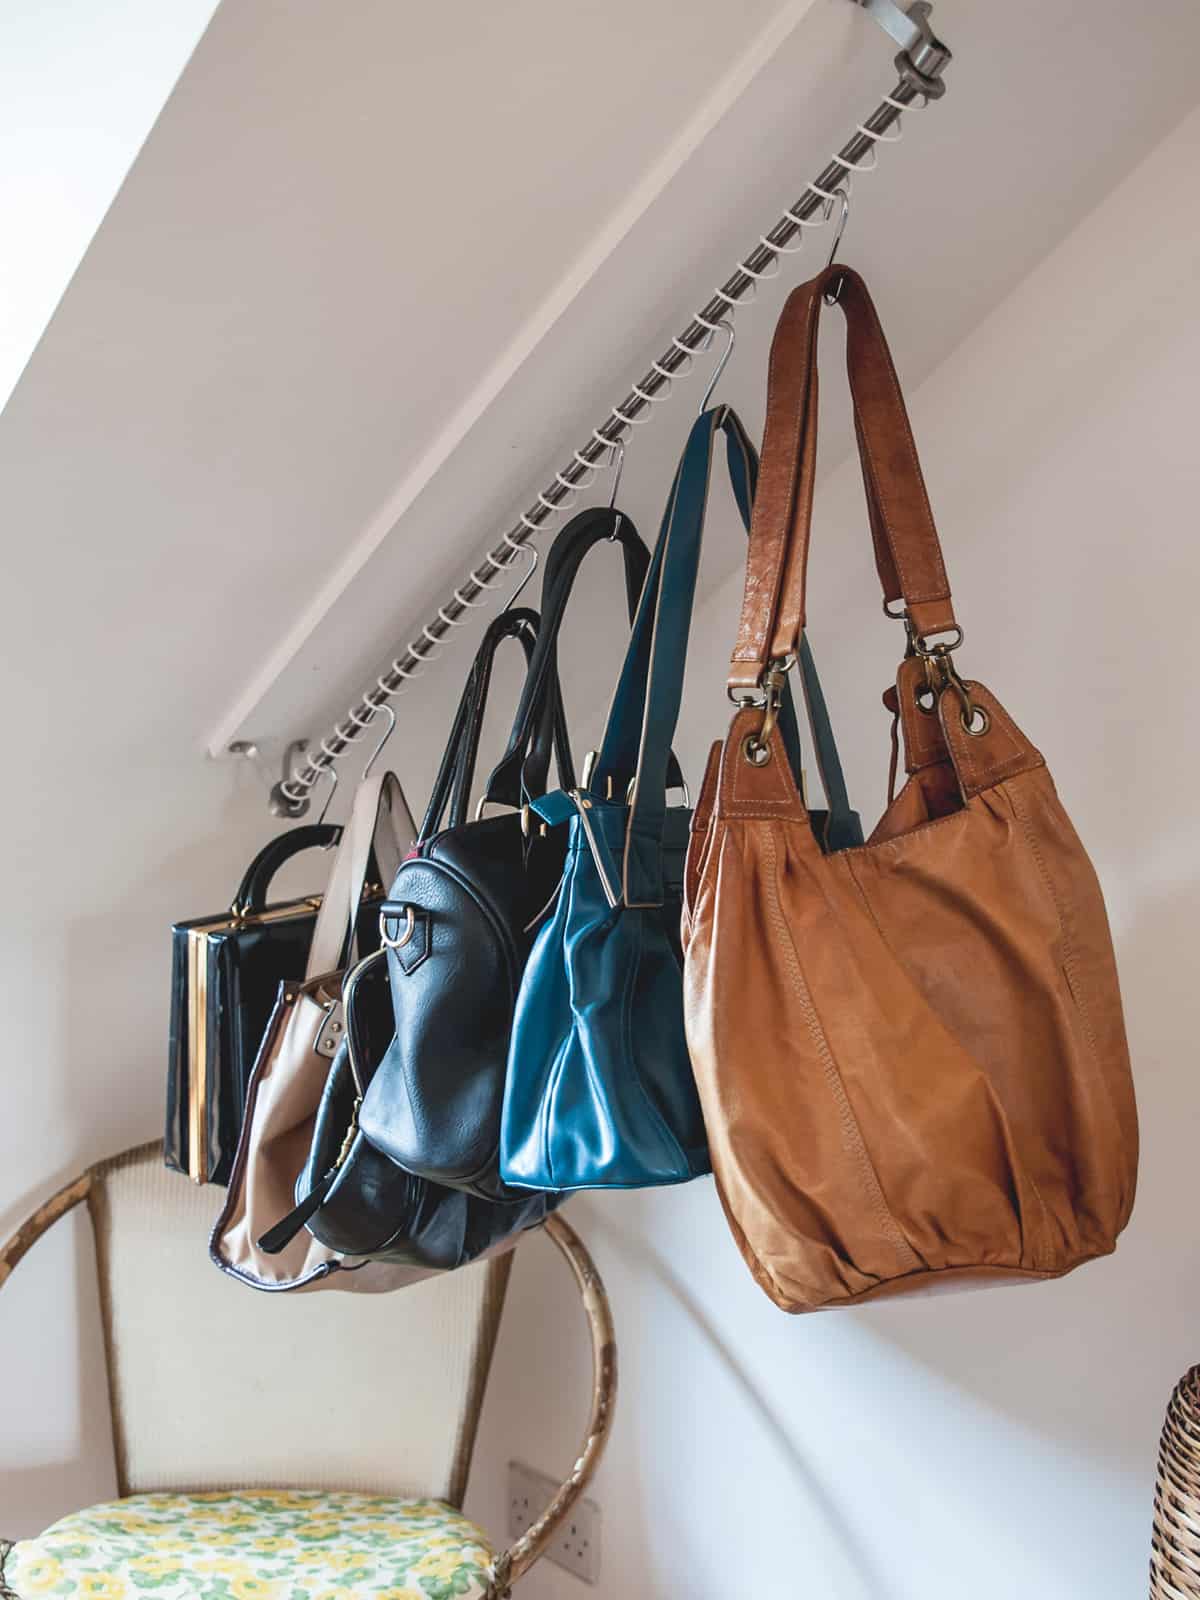 Zebedee Any Angle Hanging Rail - Vit - visas med hängande handväskor